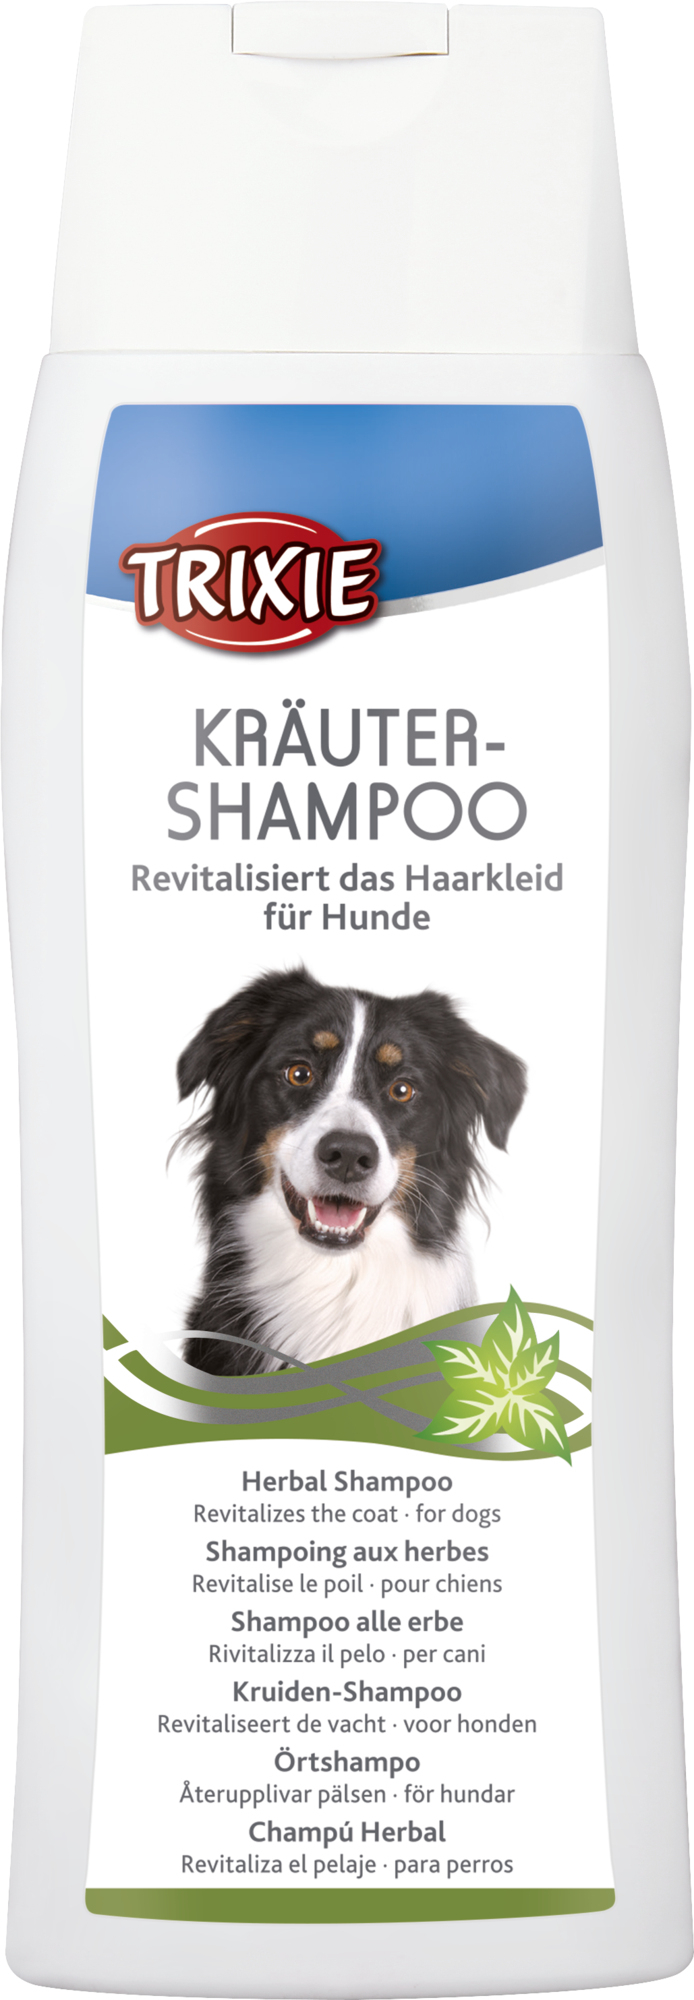 Kräuter-Shampoo